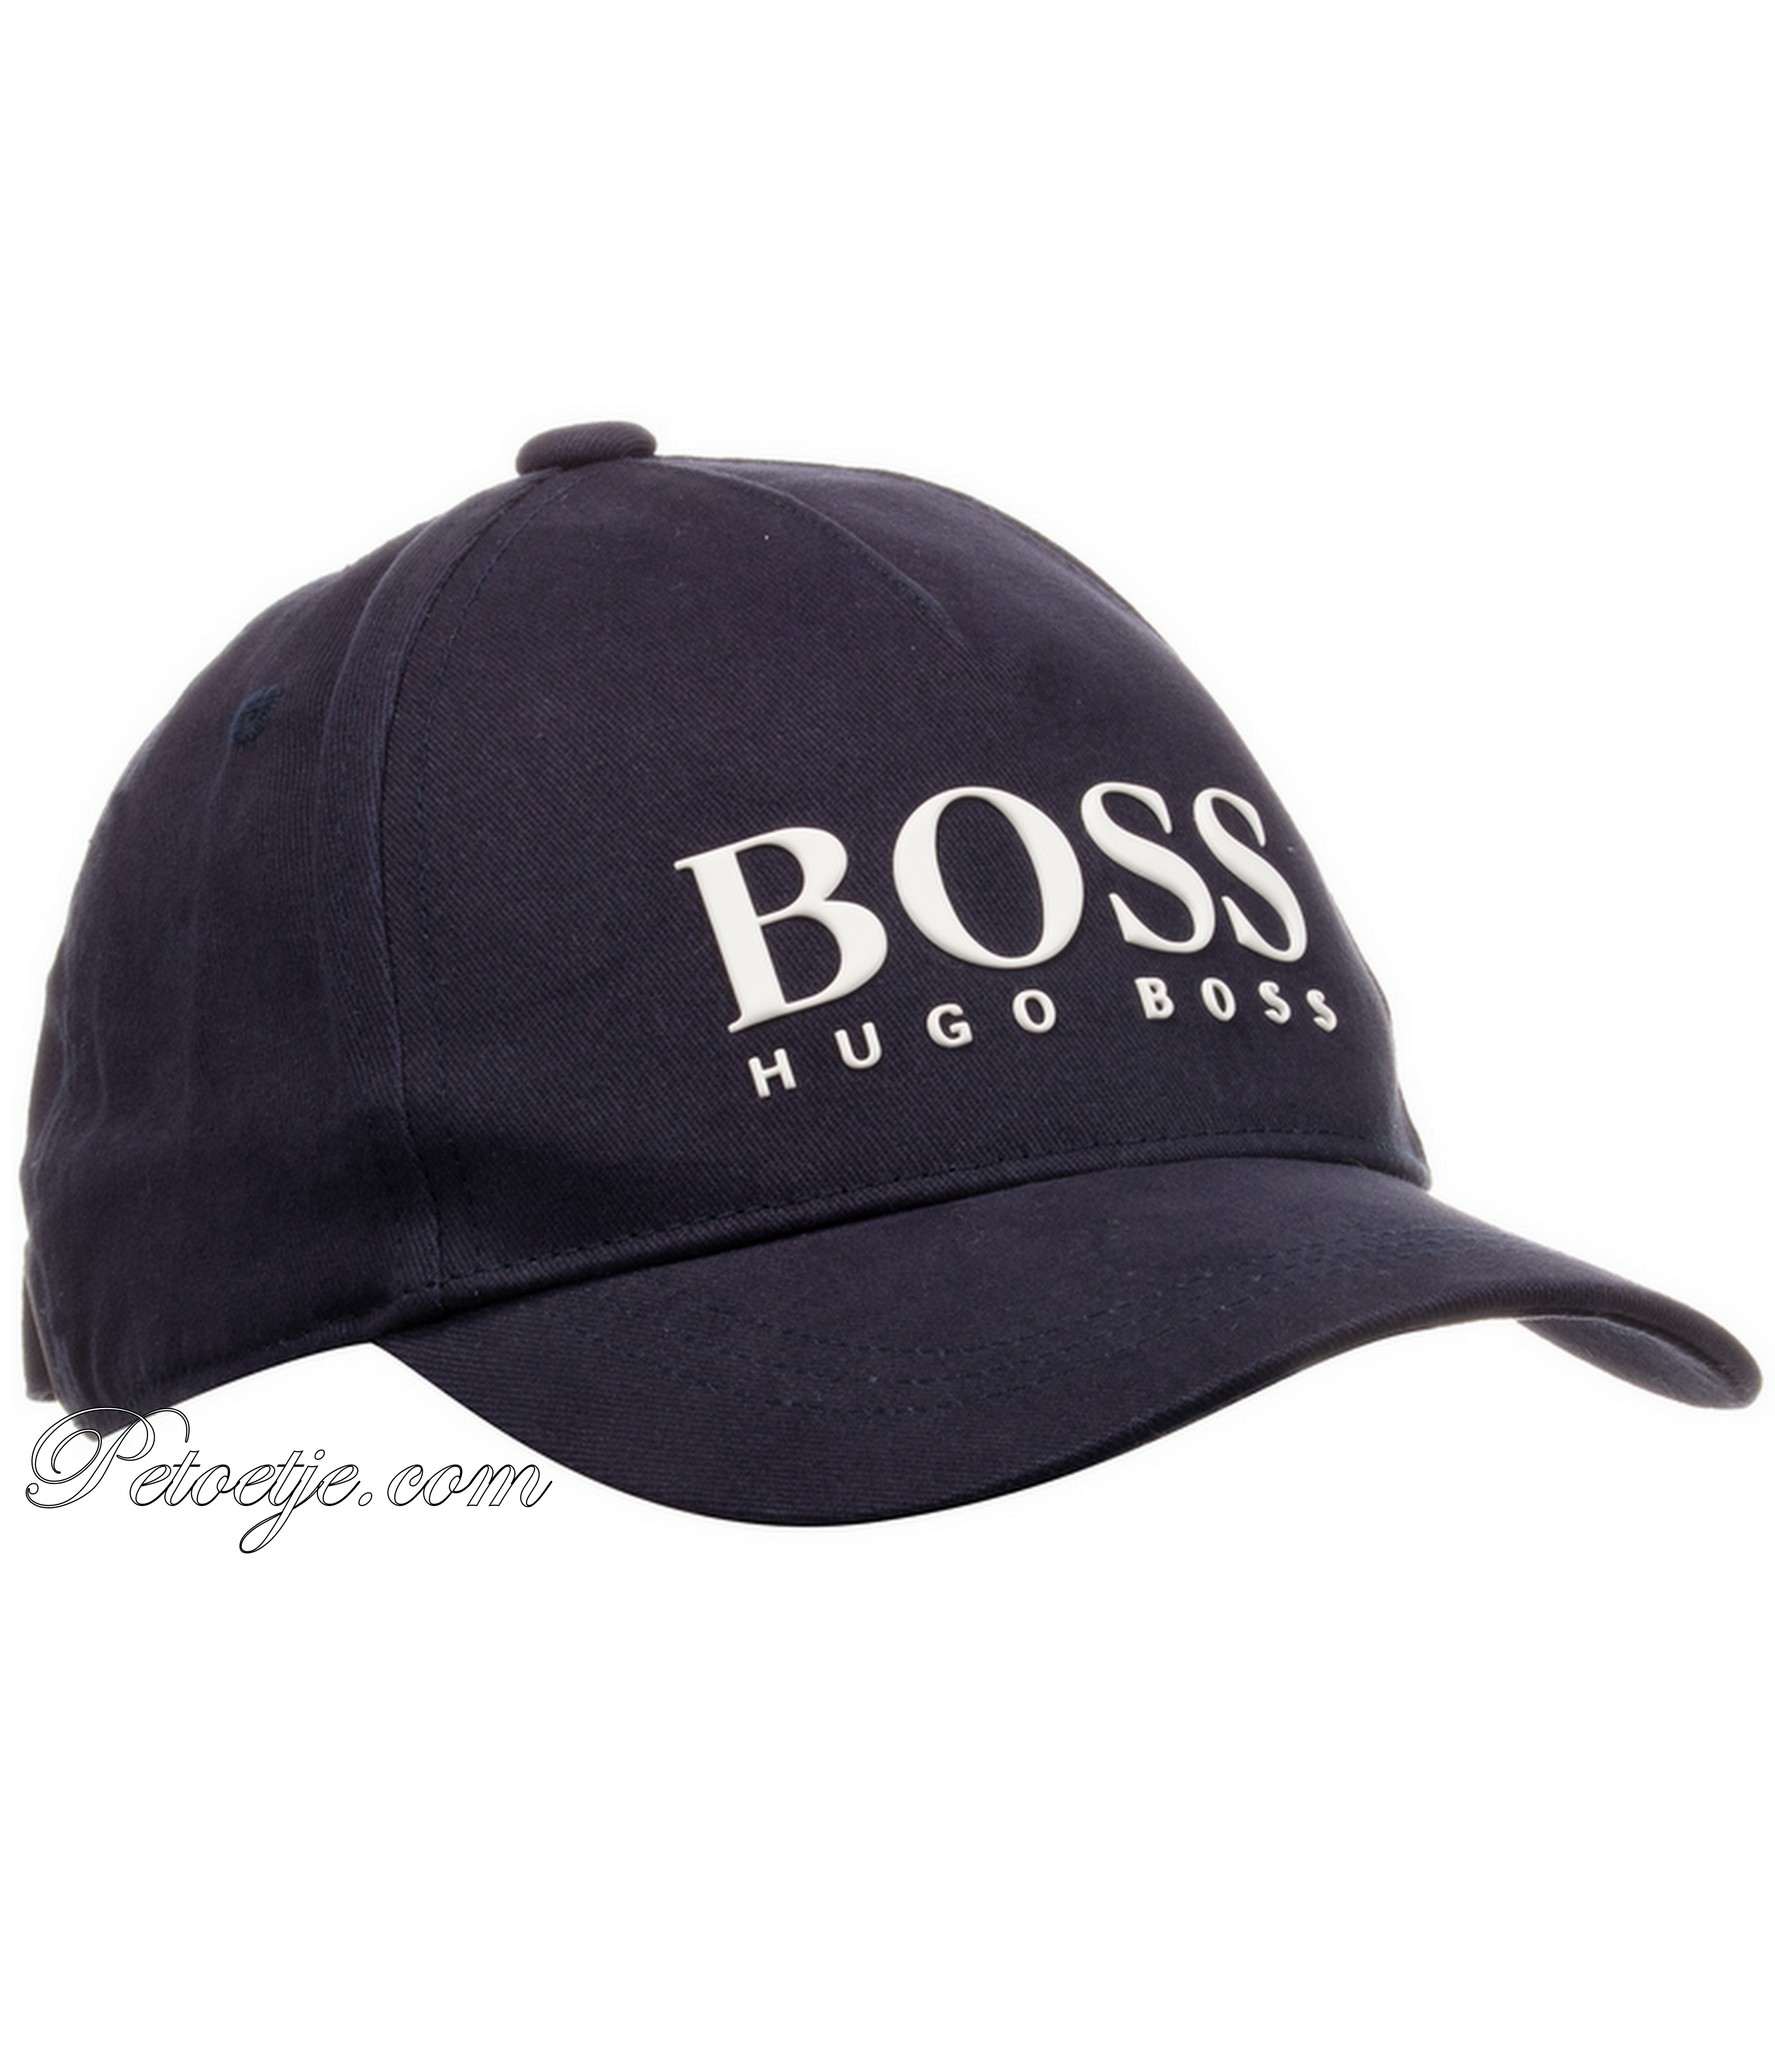 boys hugo boss cap